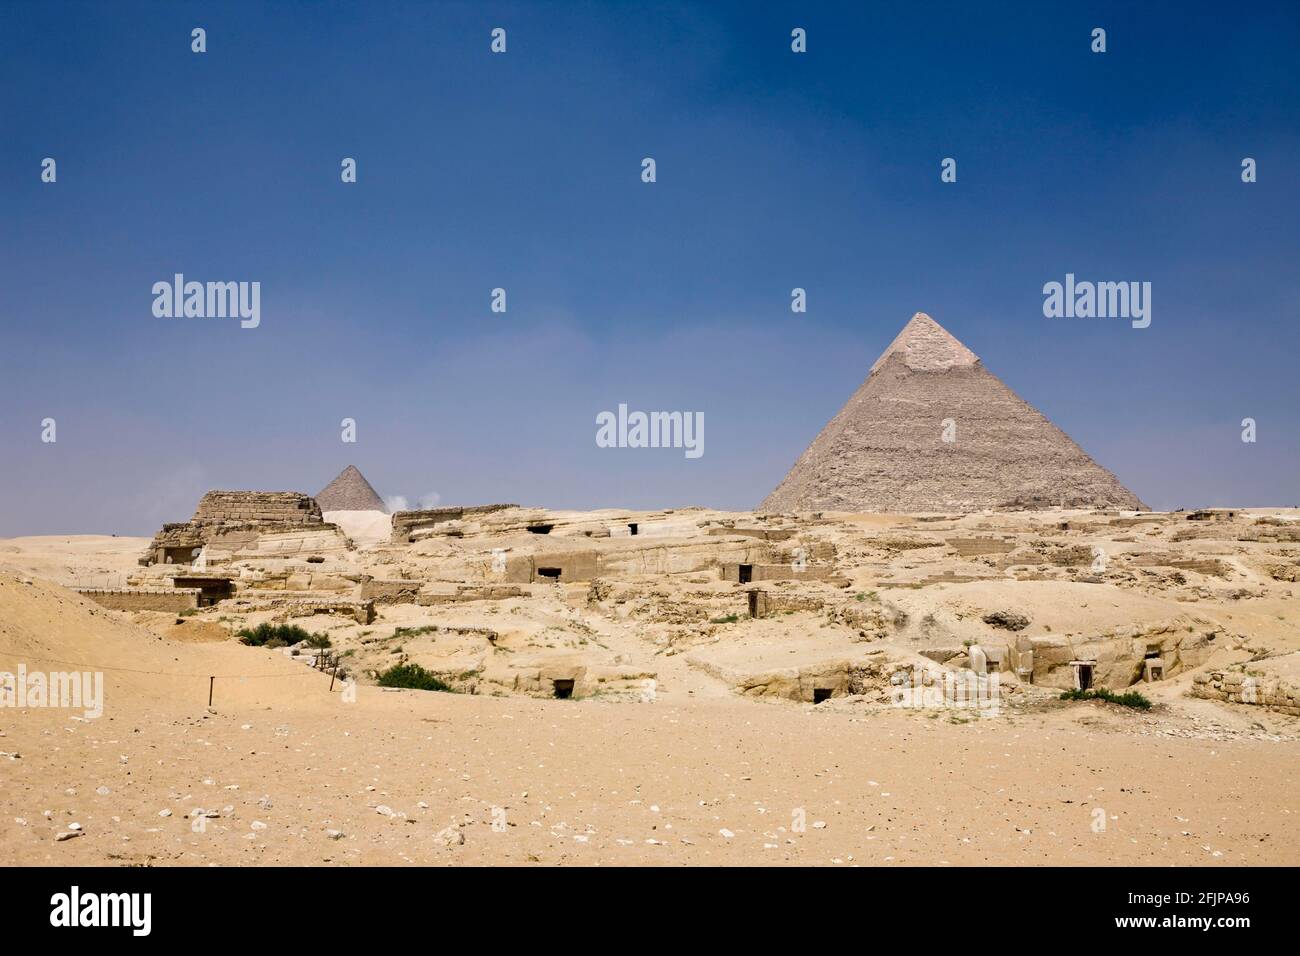 Pyramide de Chephren, Giza, Pyramide de Chepren, Égypte Banque D'Images